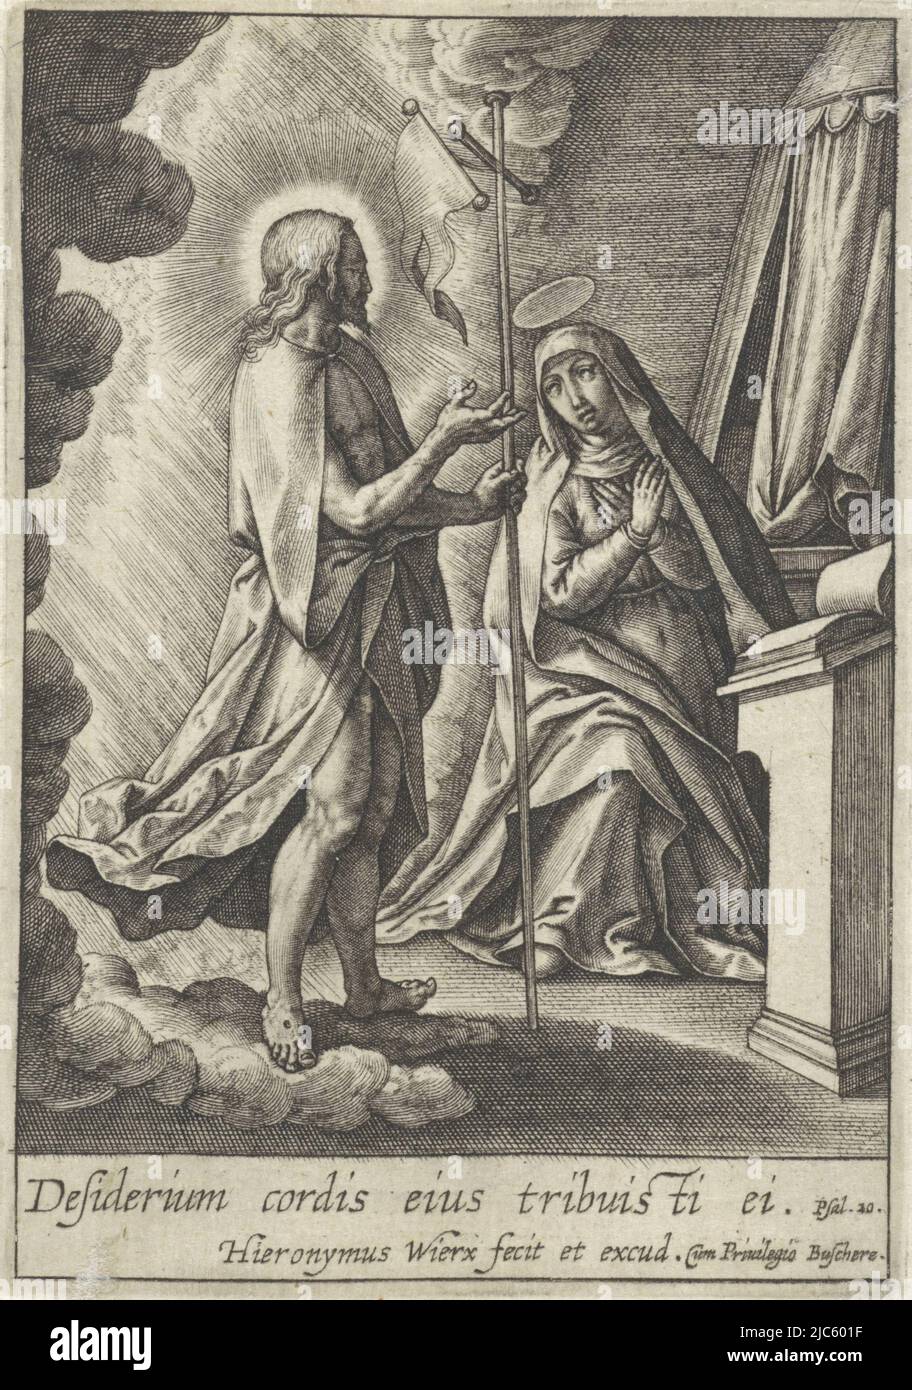 Christ apparaît à sa mère Marie après sa mort. Il est entouré de nuages et tient une équipe croisée avec bannière en main. Marie s'agenouille dans la prière à son lutrin. Dans la marge une citation de la Bible de PS. 20 en latin, Christ apparaît à Marie, imprimeur: Hieronymus Wierix, (mentionné sur l'objet), éditeur: Hieronymus Wierix, (mentionné sur l'objet), Joachim de Buschere, (Mentionné sur l'objet), Anvers, 1563 - avant 1619, papier, gravure, h 89 mm × l 62 mm Banque D'Images